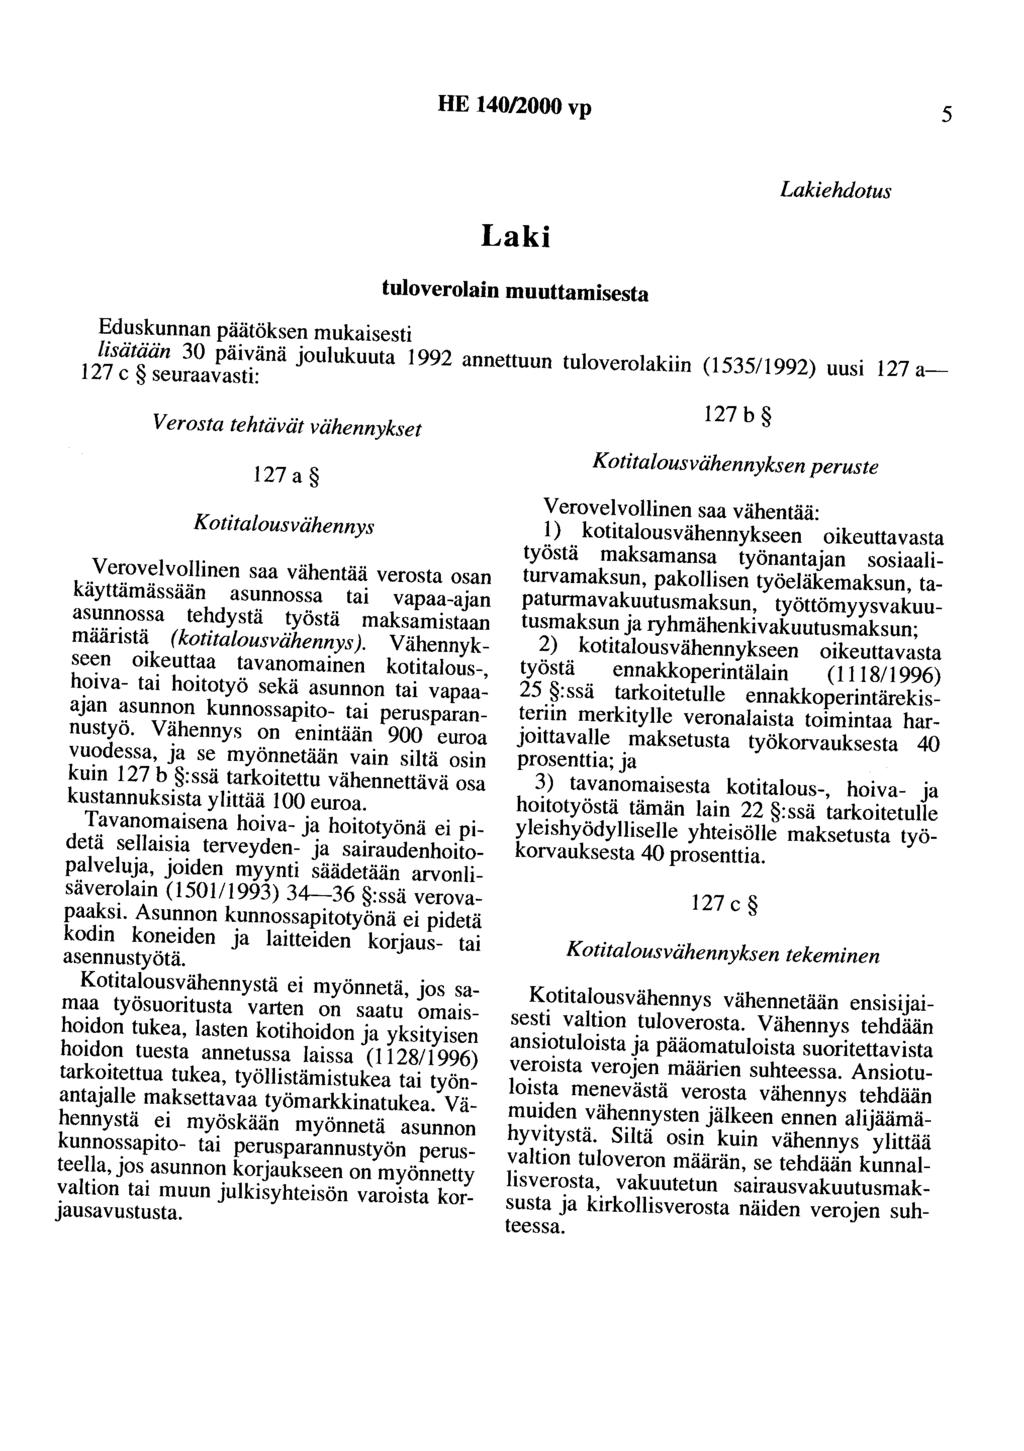 HE 140/2000 vp 5 Laki tuloverolain muuttamisesta Lakiehdotus Eduskunnan päätöksen mukaisesti lisätään 30 päivänä joulukuuta 1992 annettuun tuloverolakiin (153511992) uusi 127 a- 127 c seuraavasti: